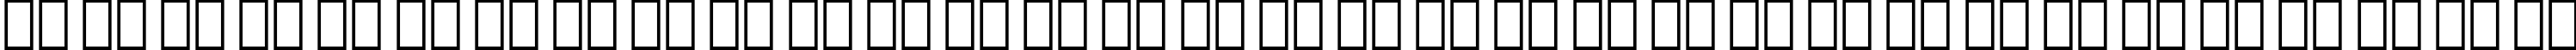 Пример написания русского алфавита шрифтом Onyx BT